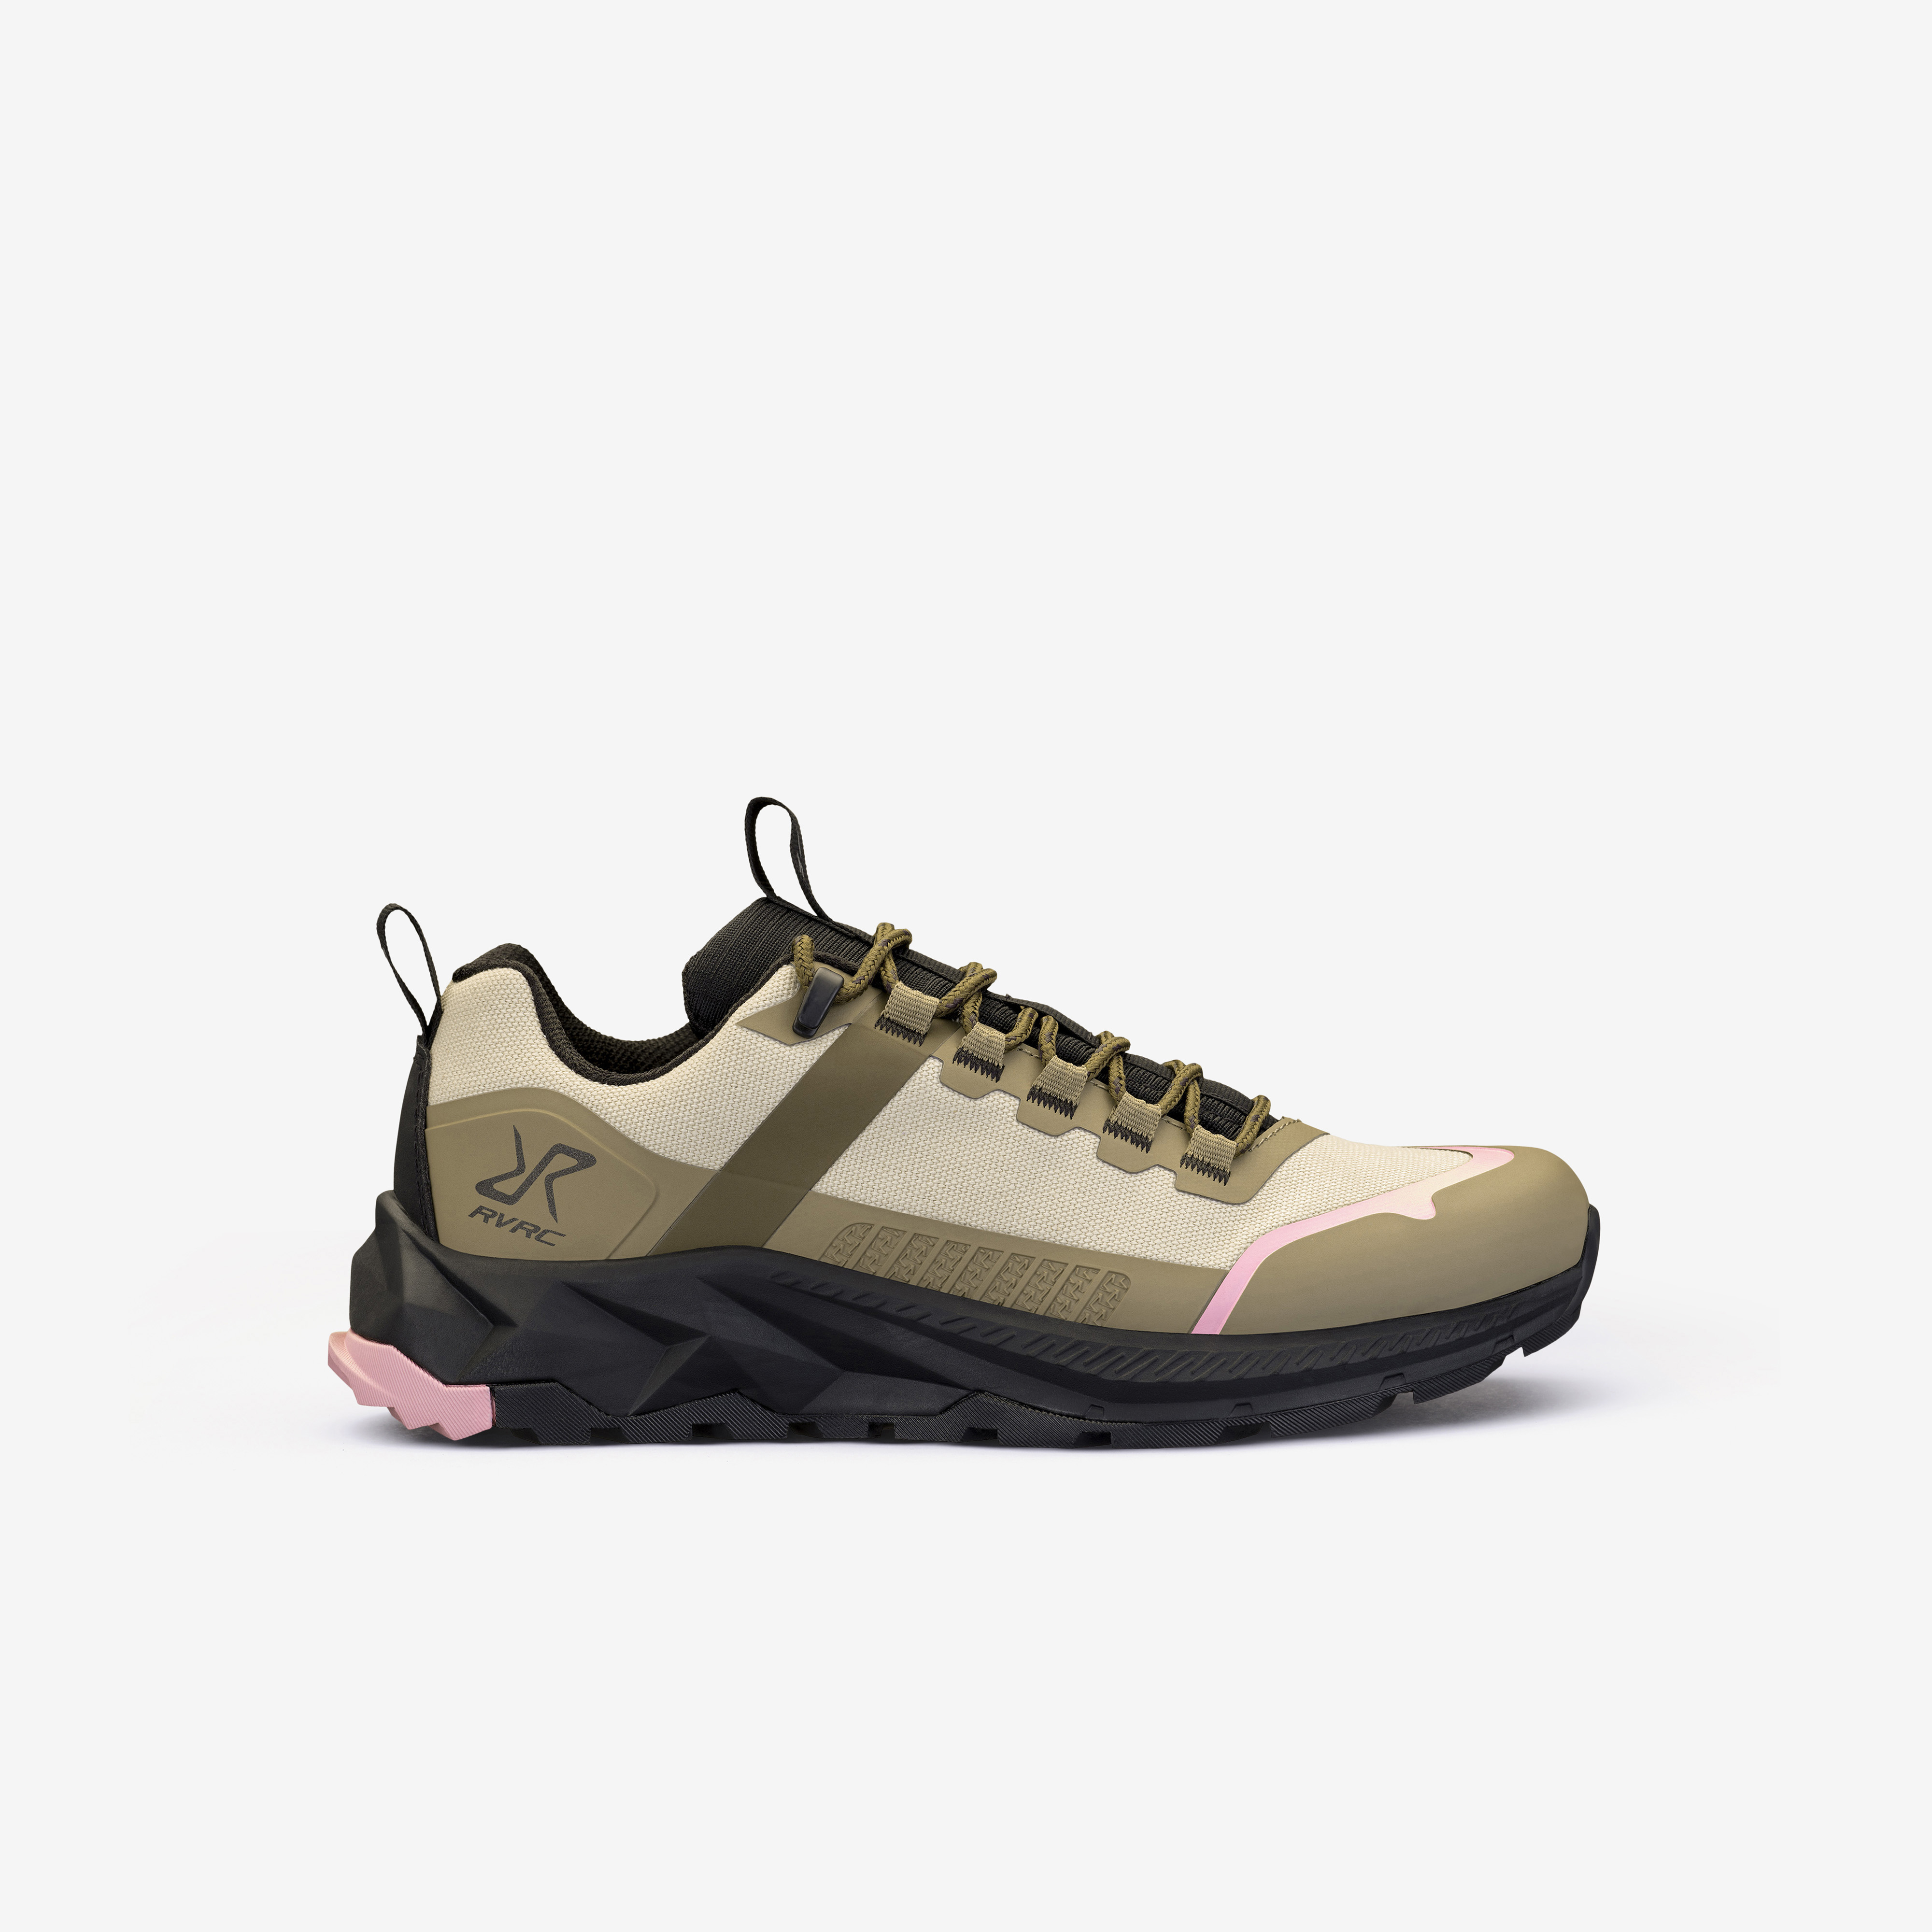 Phantom Trail Low Hiking Shoes – Dam – Rainy Black Storlek:37 – Skor